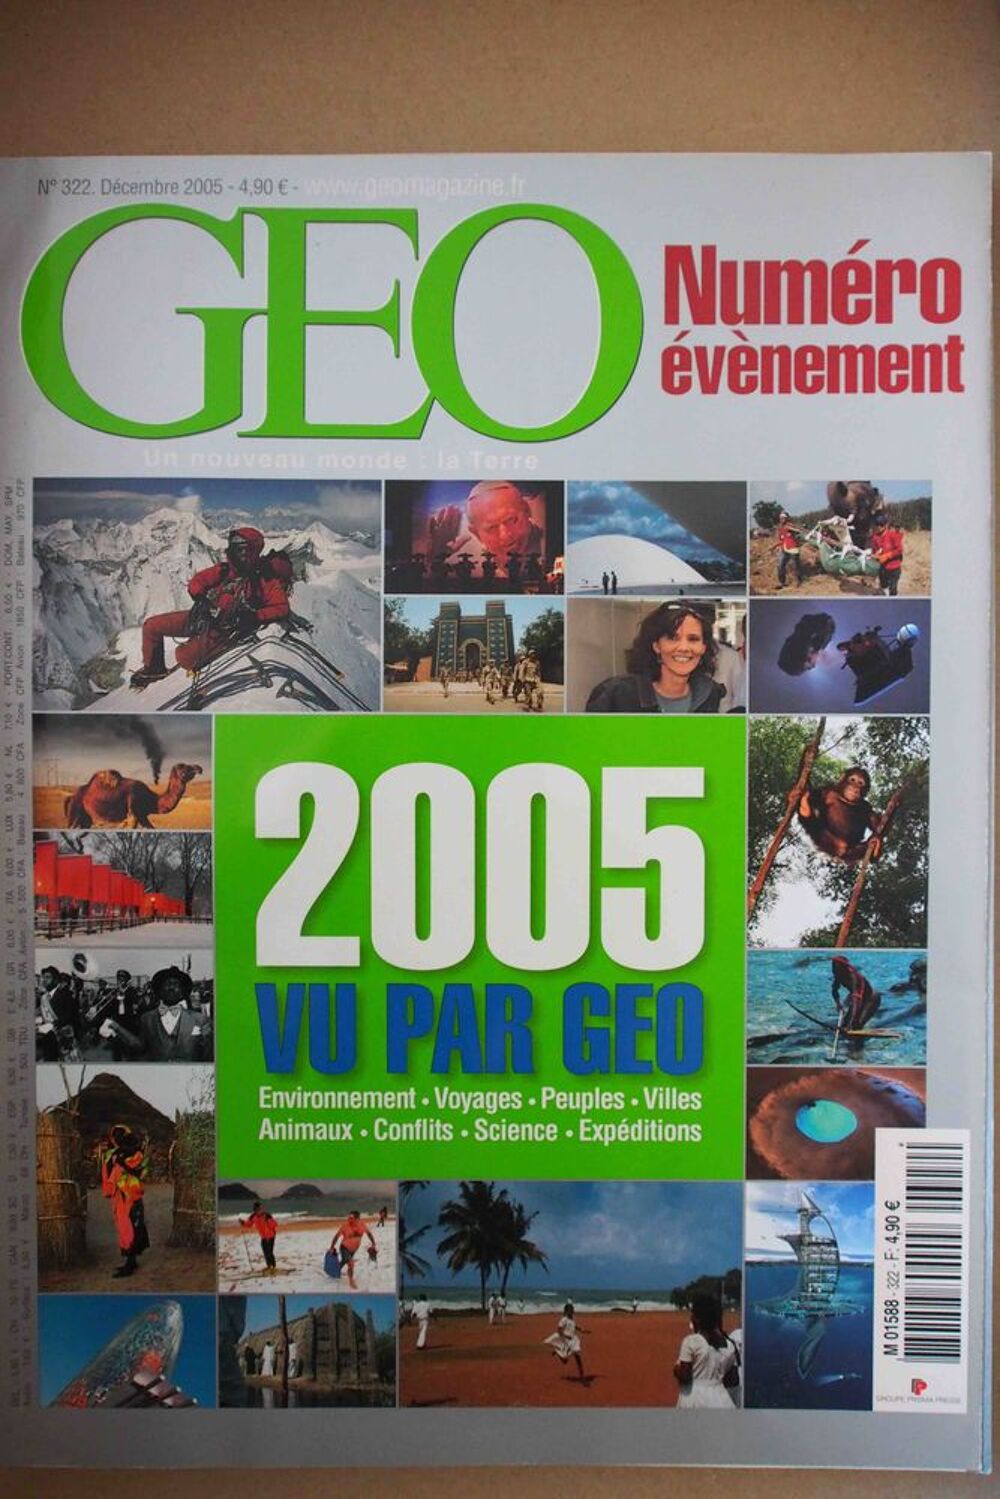 2005 vue par GEO, Livres et BD